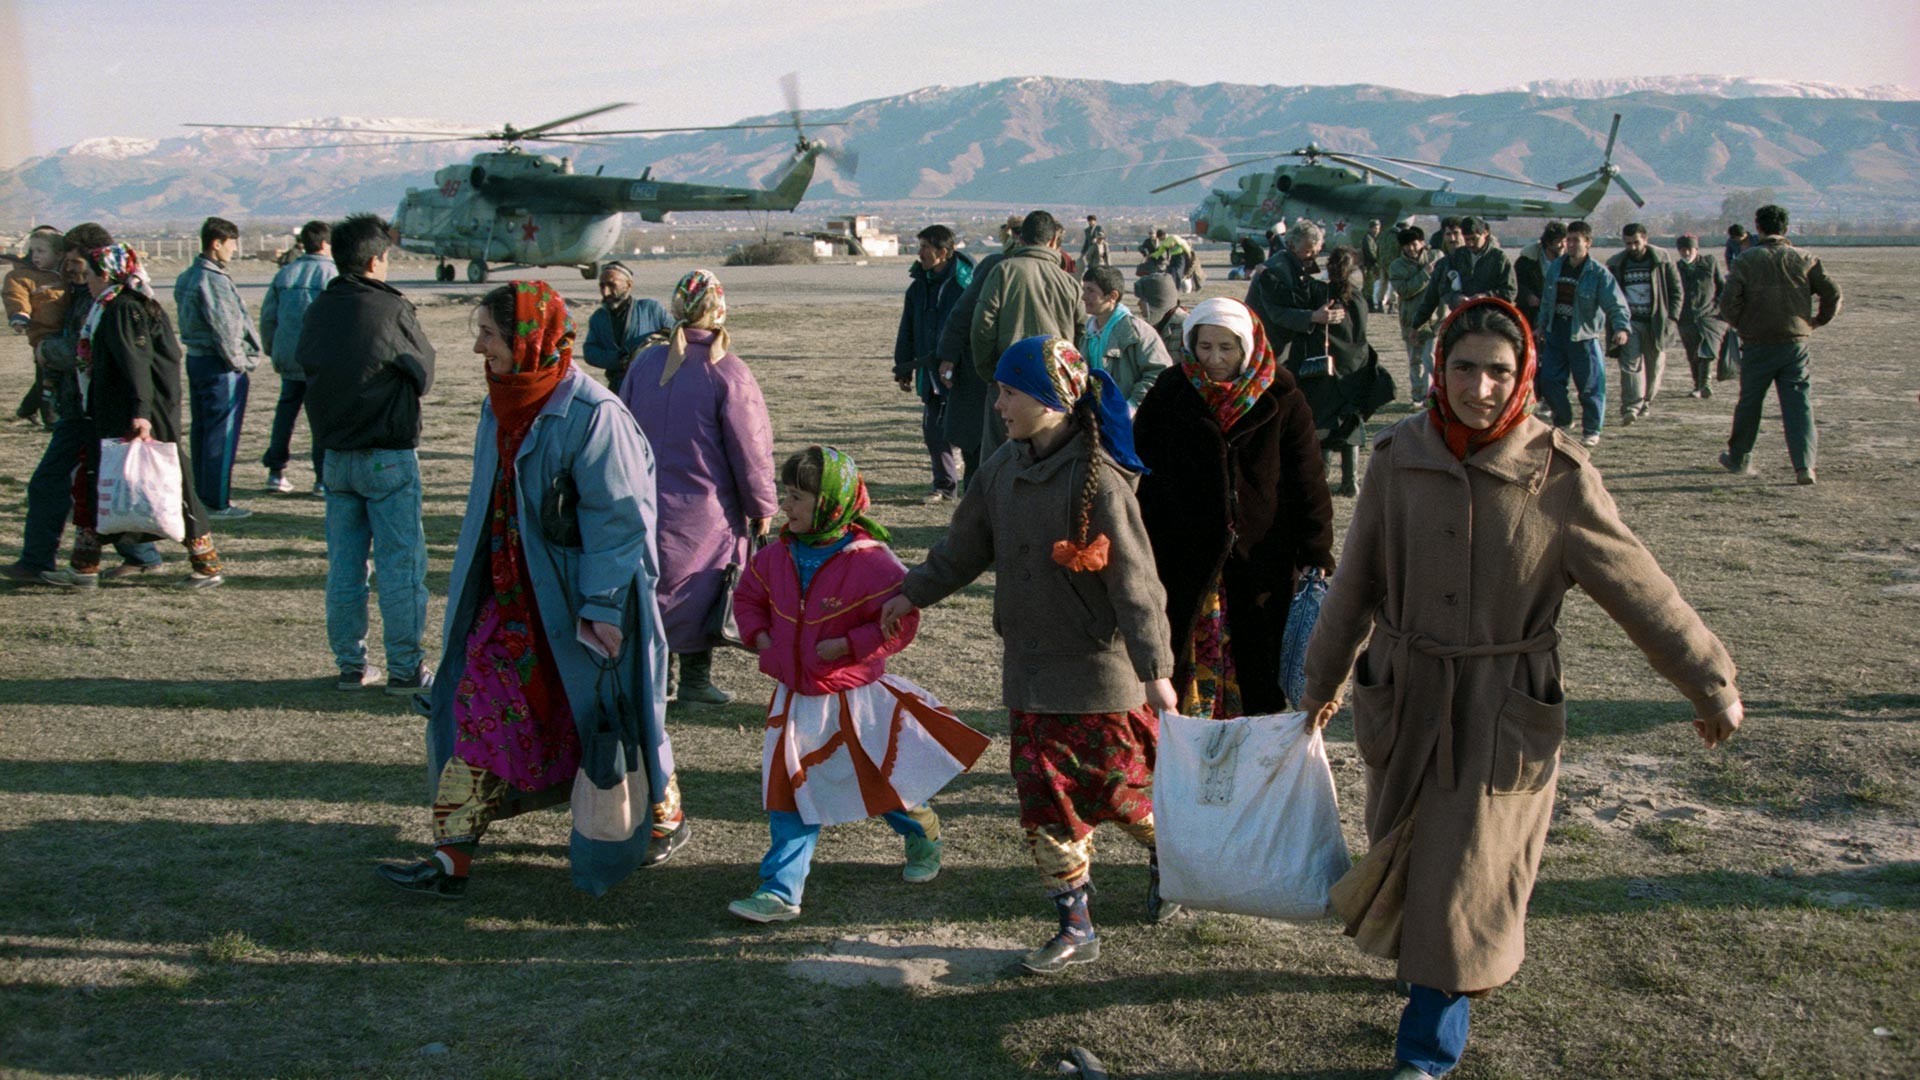 Koalicijske mirovne sile med dostavljanjem prehrambenih izdelkov za stradajoče prebivalce odročne regije v gorovju Pamir